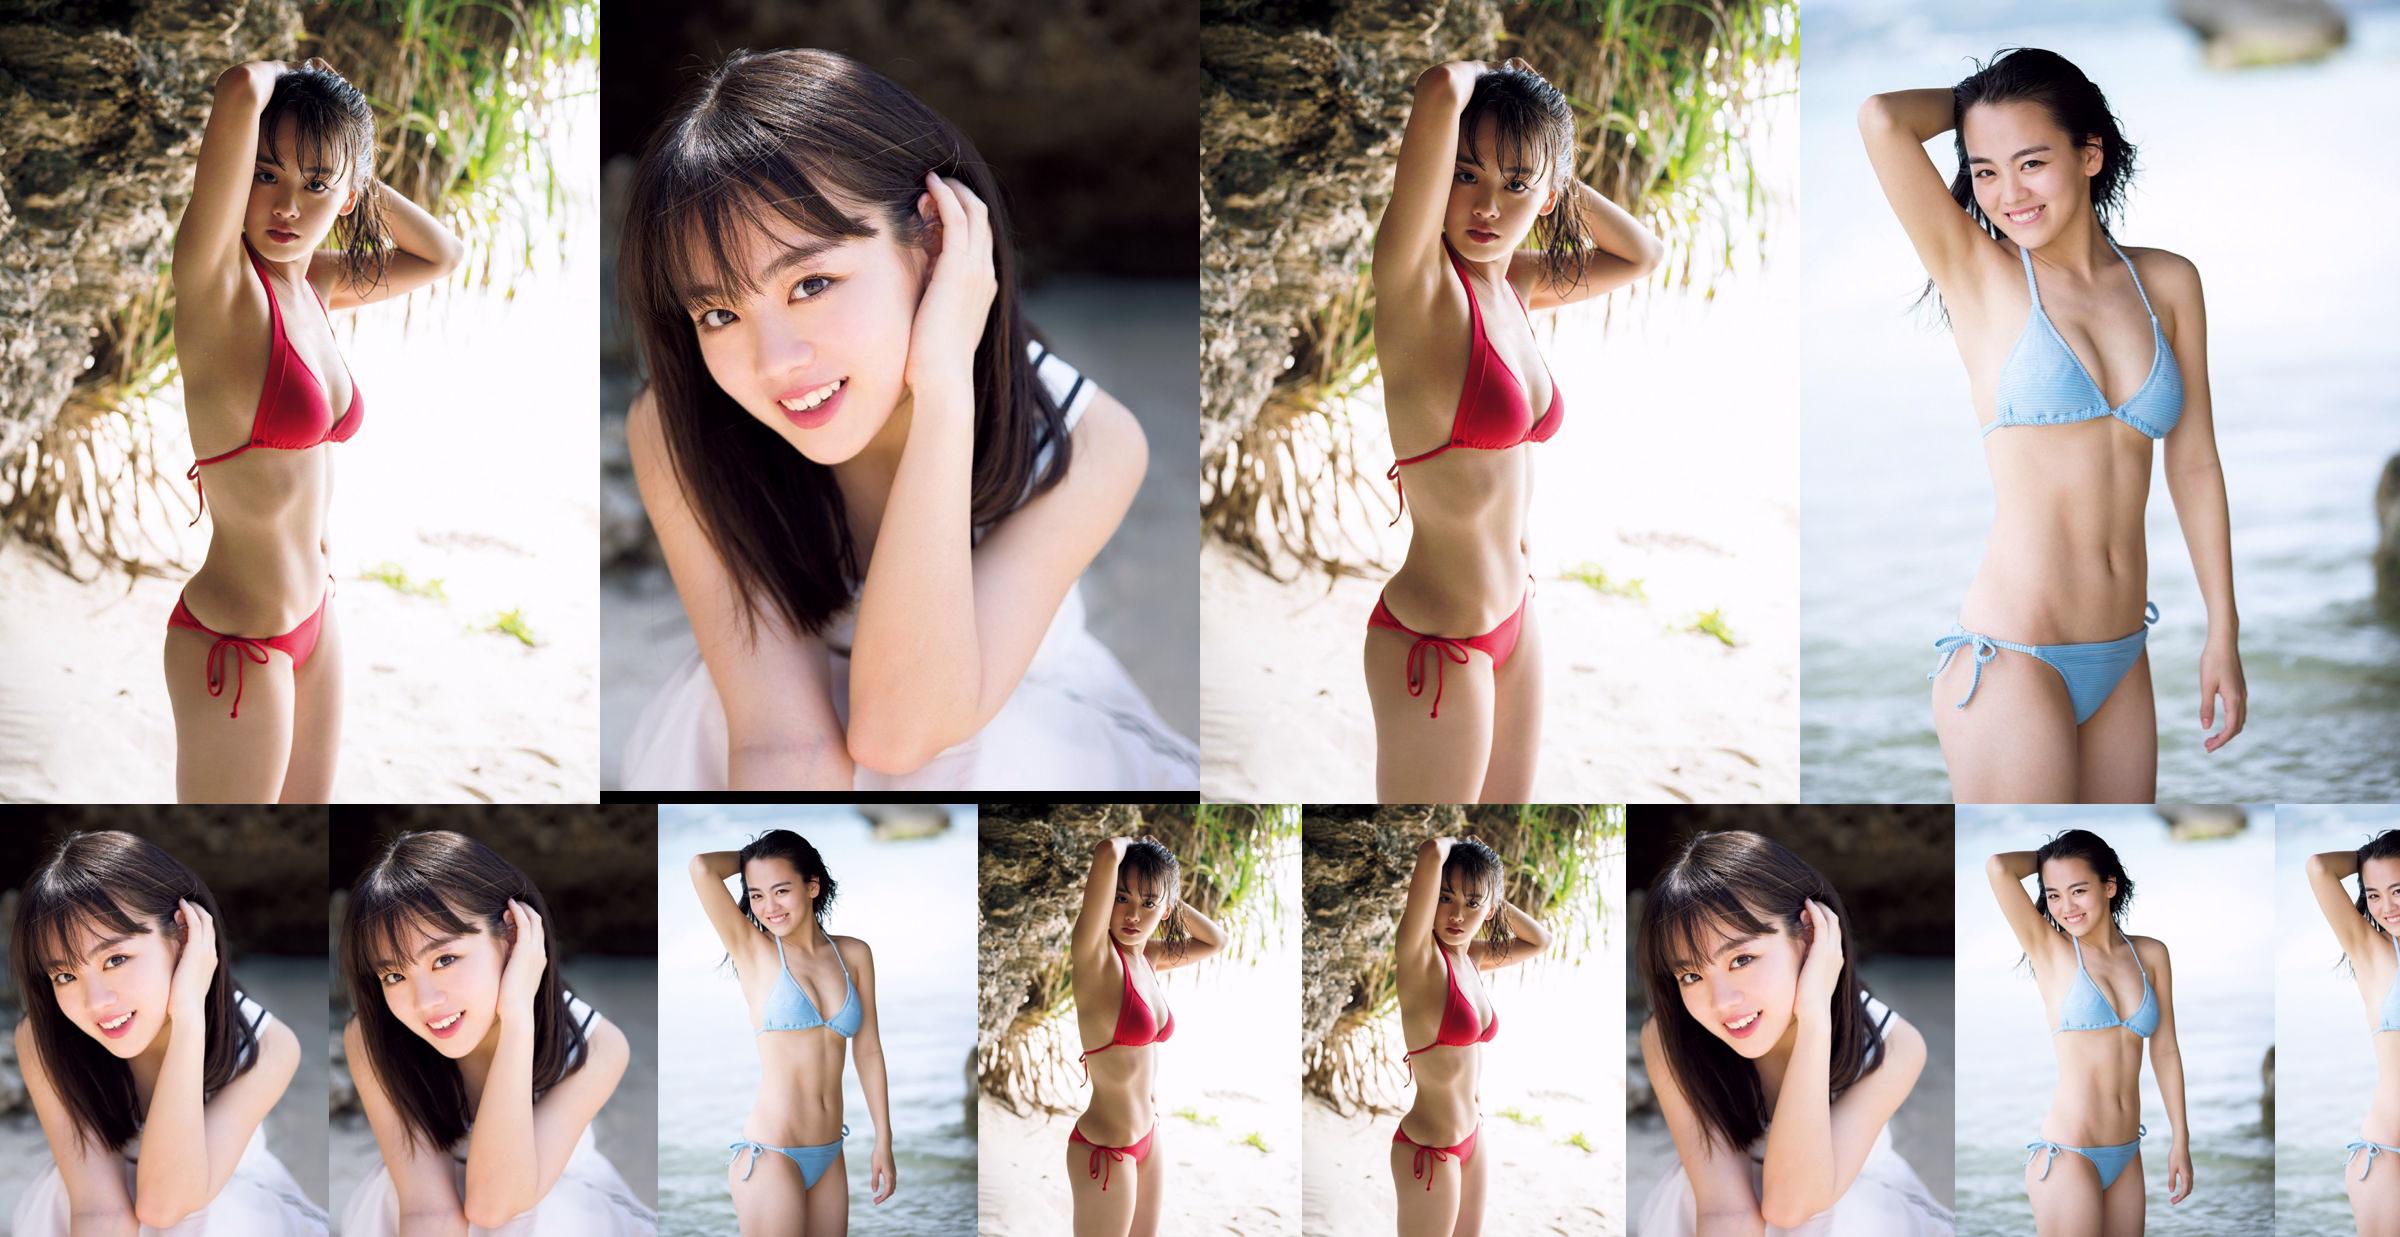 [THỨ SÁU] Rikka Ihara << Cựu đội trưởng câu lạc bộ khiêu vũ trường trung học Tomioka ra mắt trong bộ bikini >> Ảnh No.22a57a Trang 1